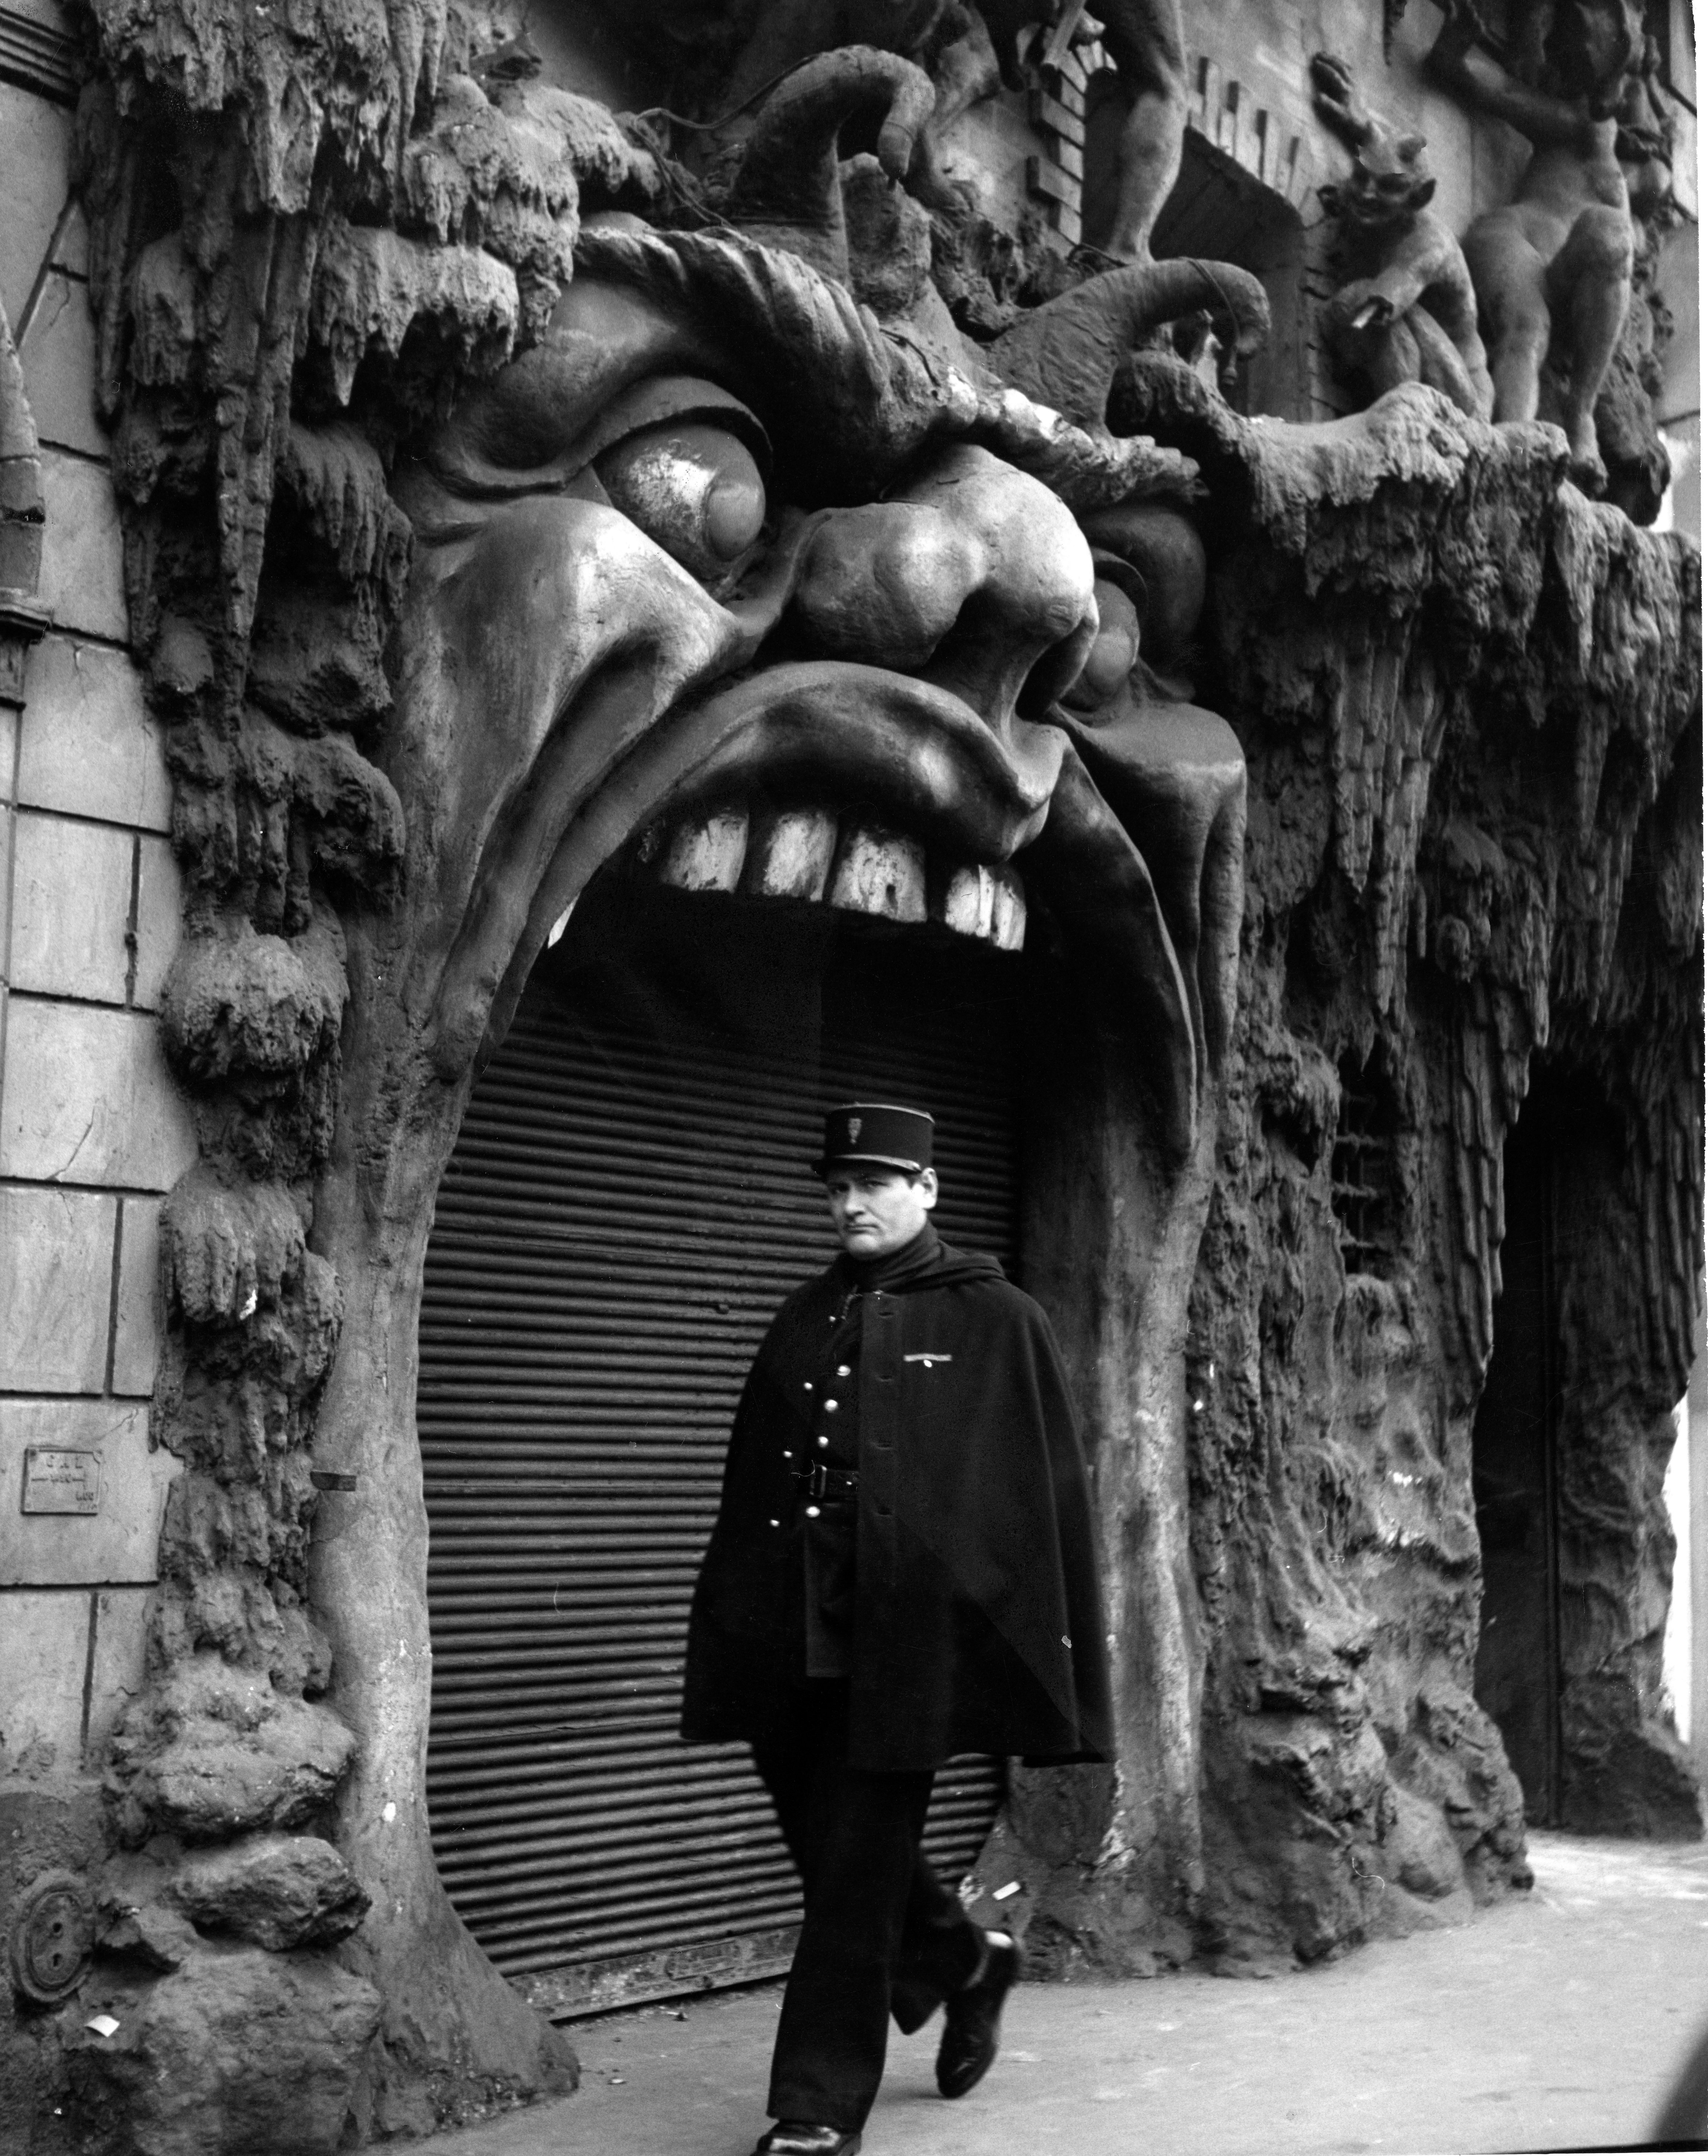 Robert DOISNEAU “L’enfer, Paris 1952” © Atelier Robert Doisneau